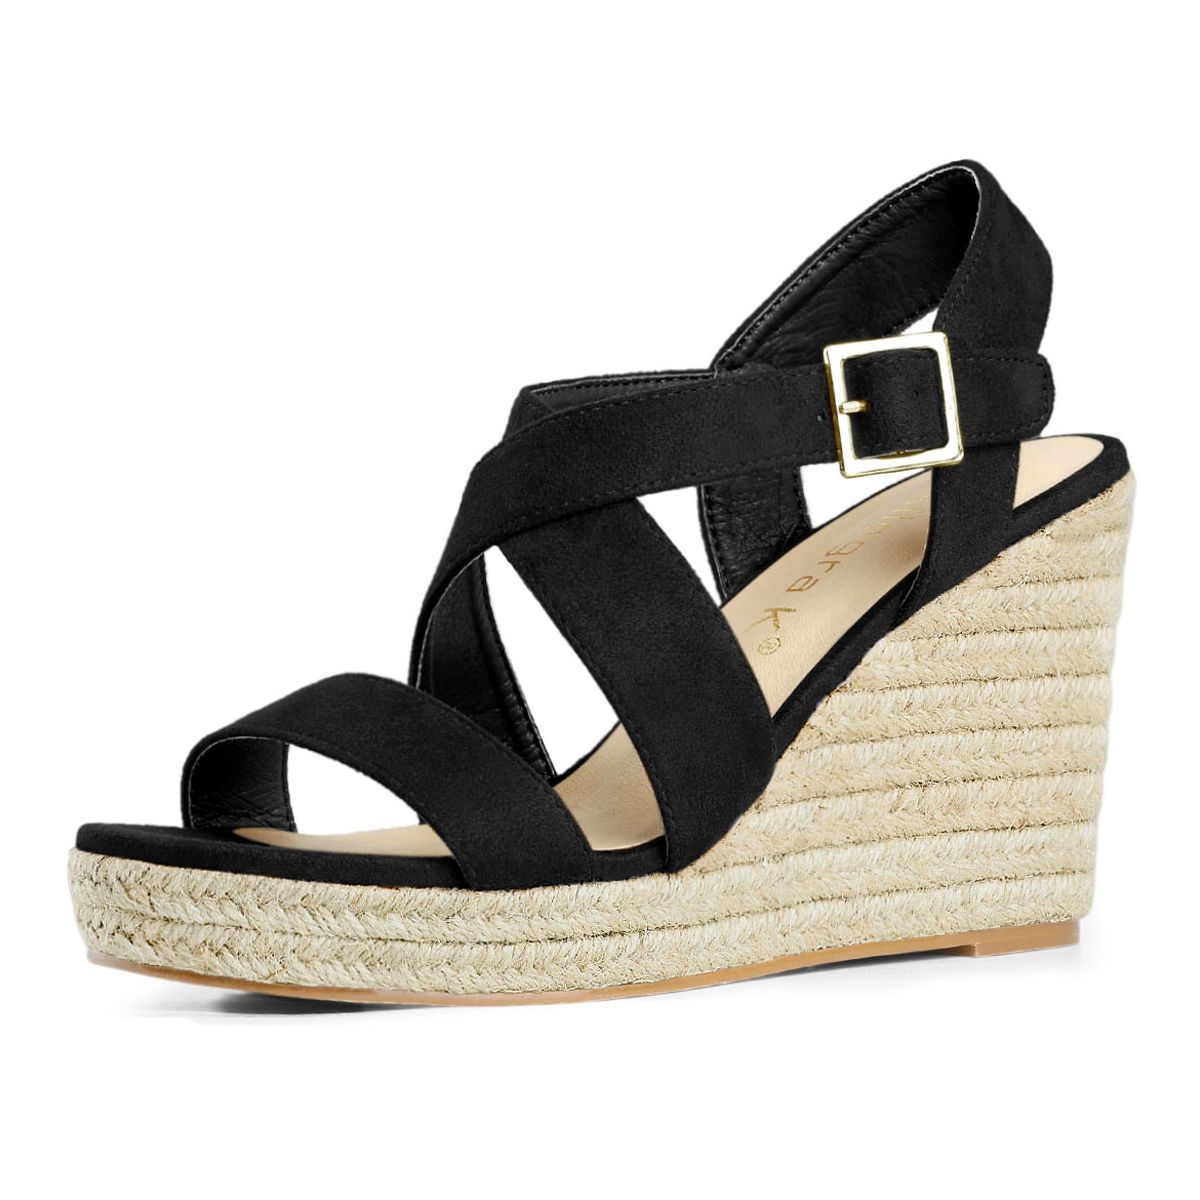 Allegra K Women's Espadrilles Platform Slingback Wedges Sandals | Target